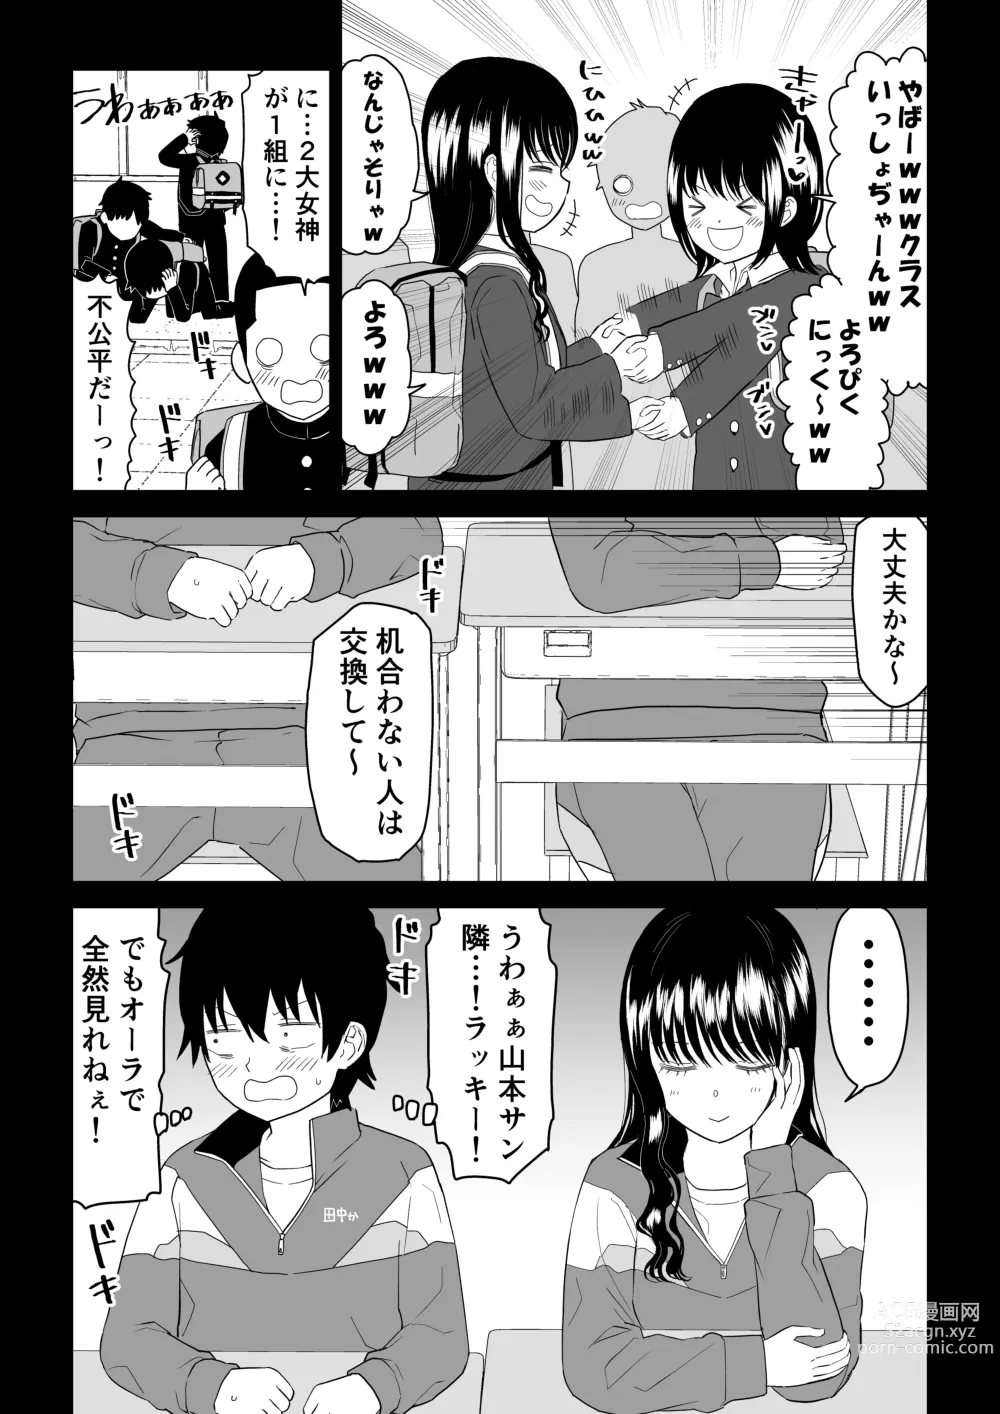 Page 6 of doujinshi Cool-Dere JK 3 Shitsurakuen Hen